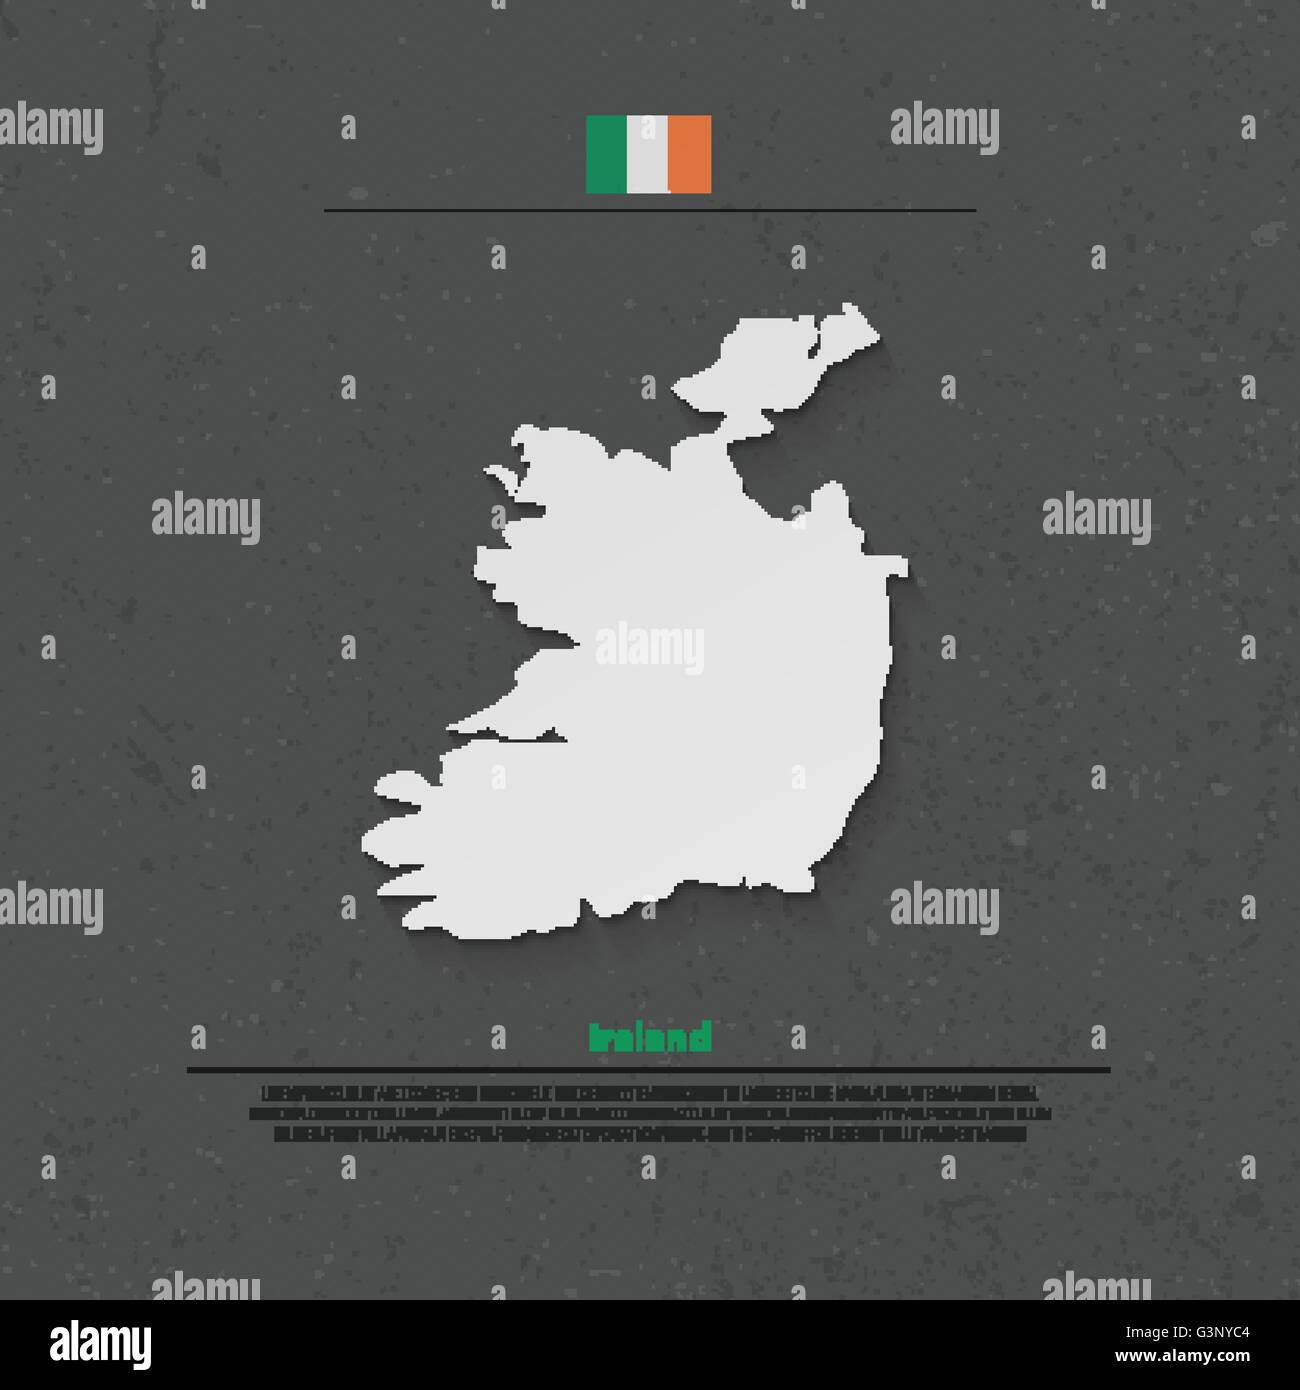 Republik Irland isoliert Karte und offizielle Flaggen-Icons. Vektor-irische politische Karte 3d Illustration über Papierstruktur. EU-geog Stock Vektor